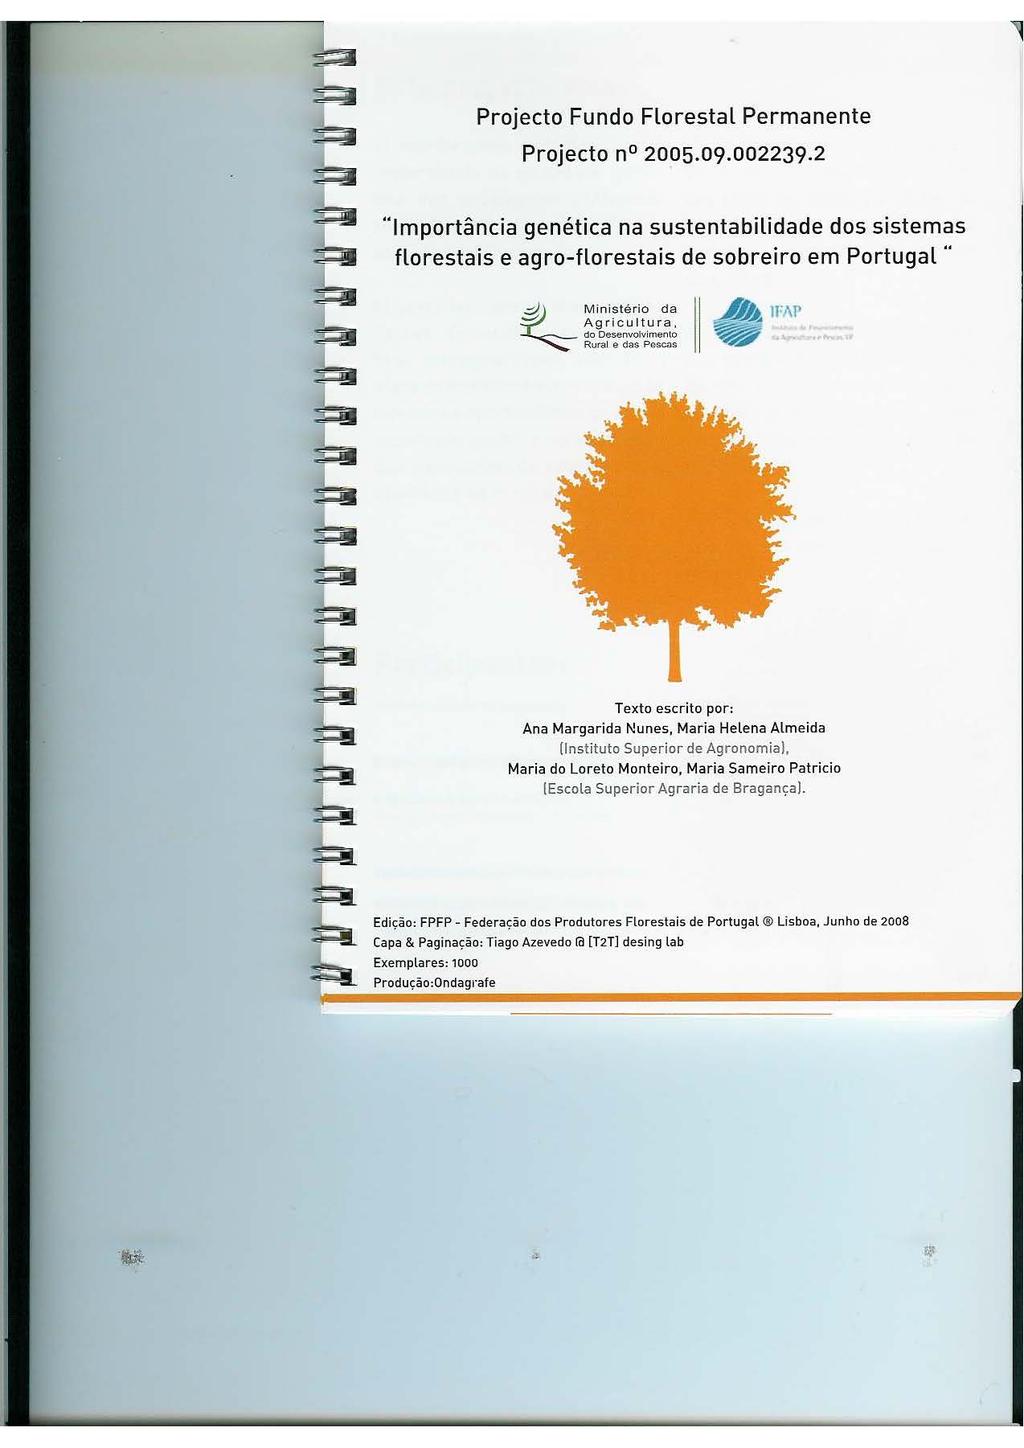 Projecto Fundo Florestal Permanente Projecto n 2005.09.002239.2 "Importância genética na sustentabilidade dos sistemas florestais e agro-florestais de sobreiro em Portugal.